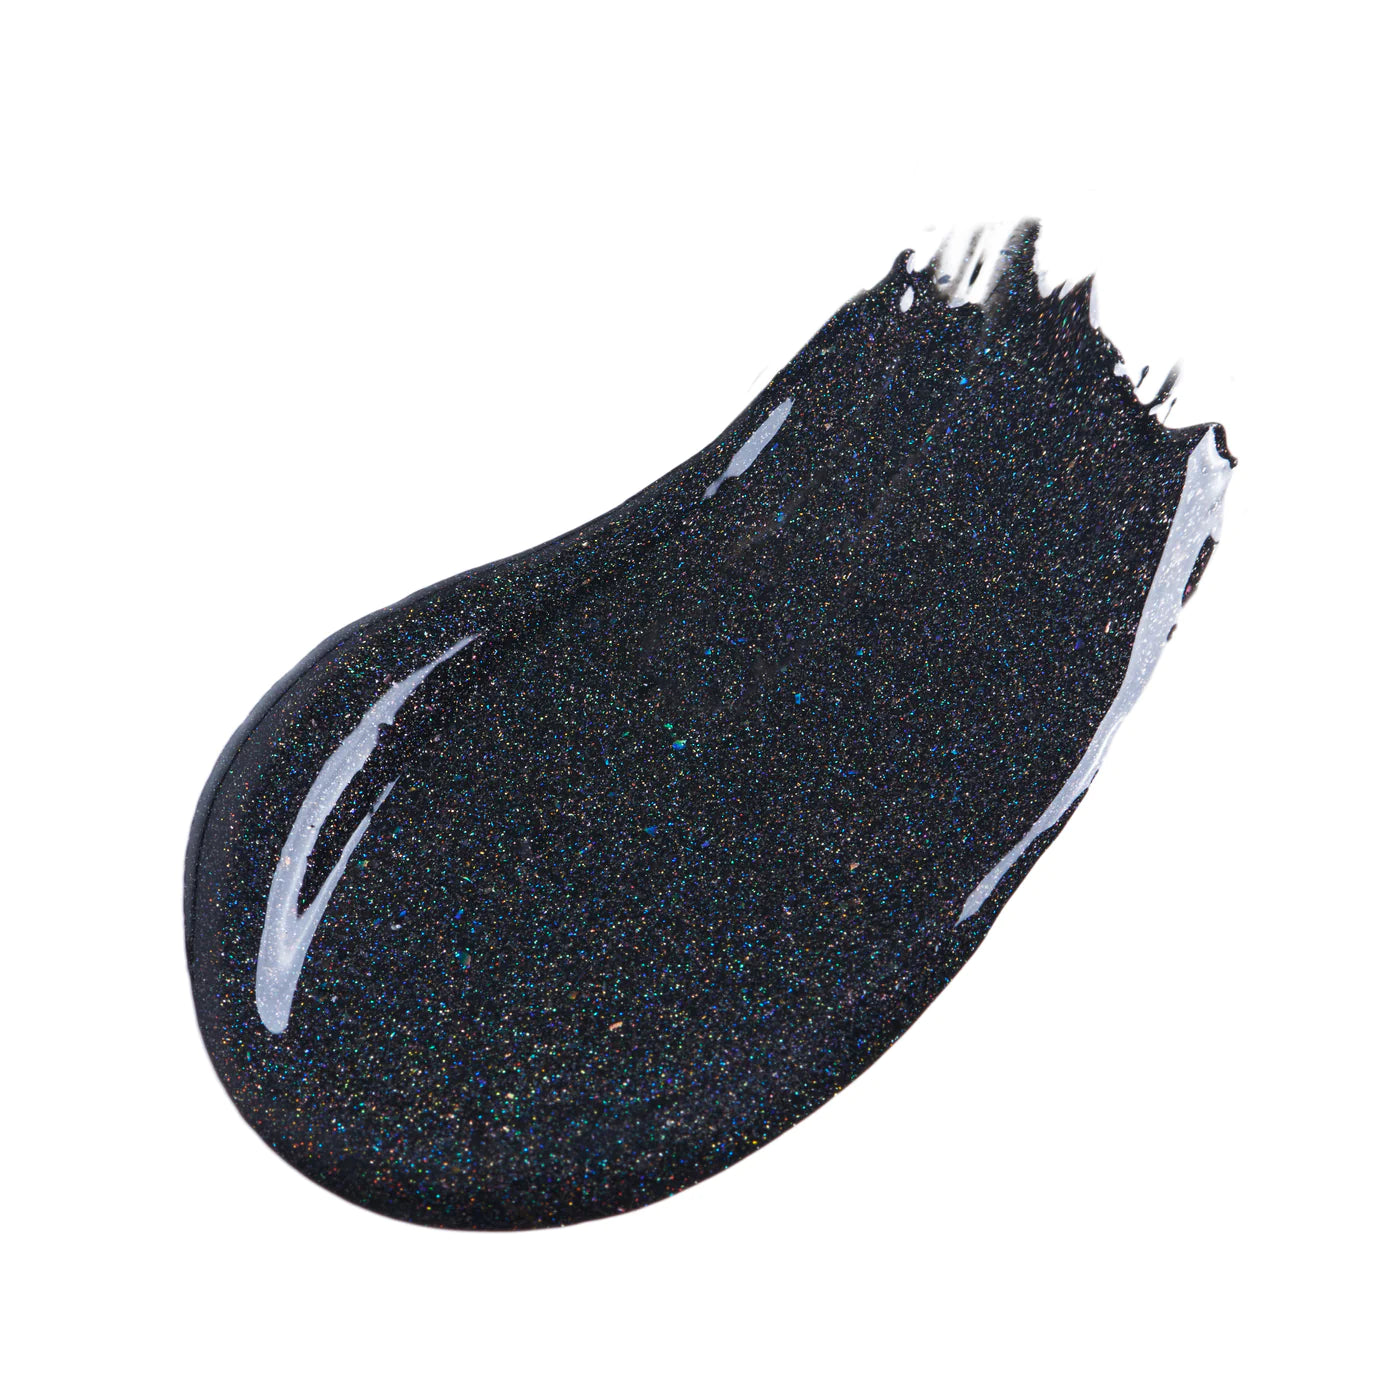 Caviar Lip Gloss